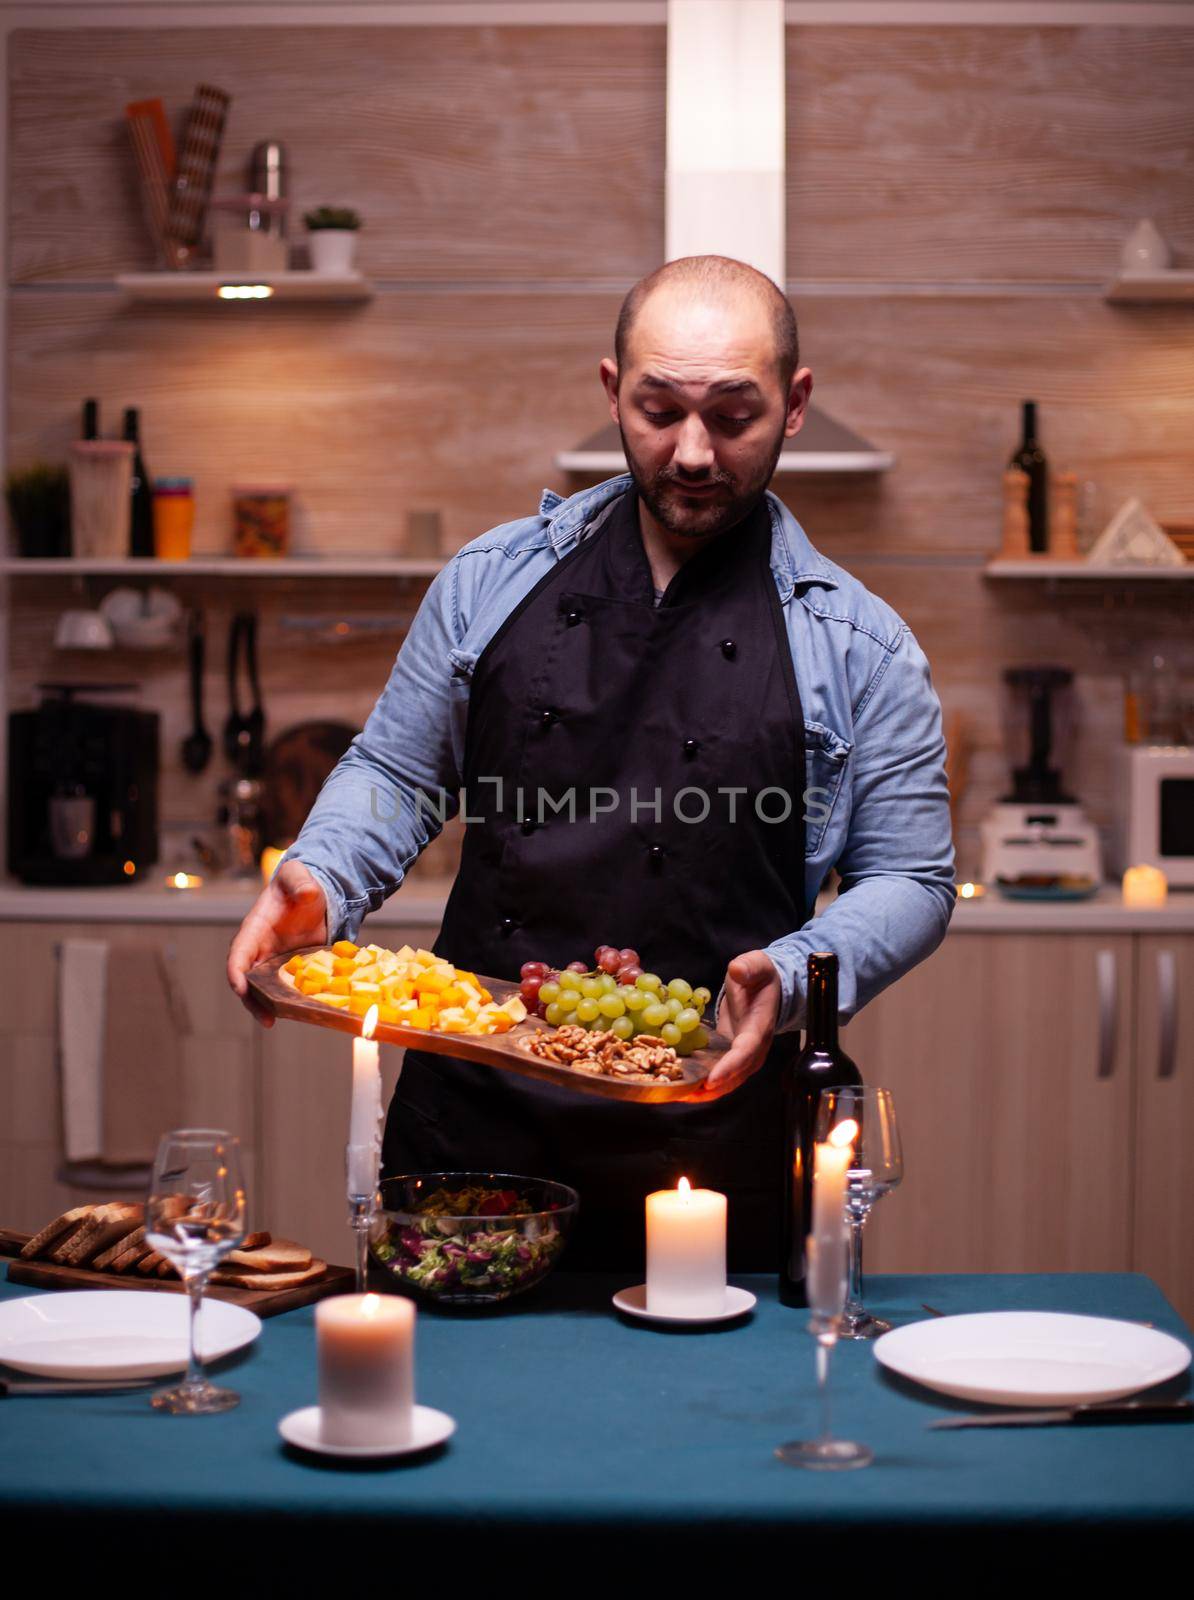 Boyfriend preparing dinner by DCStudio